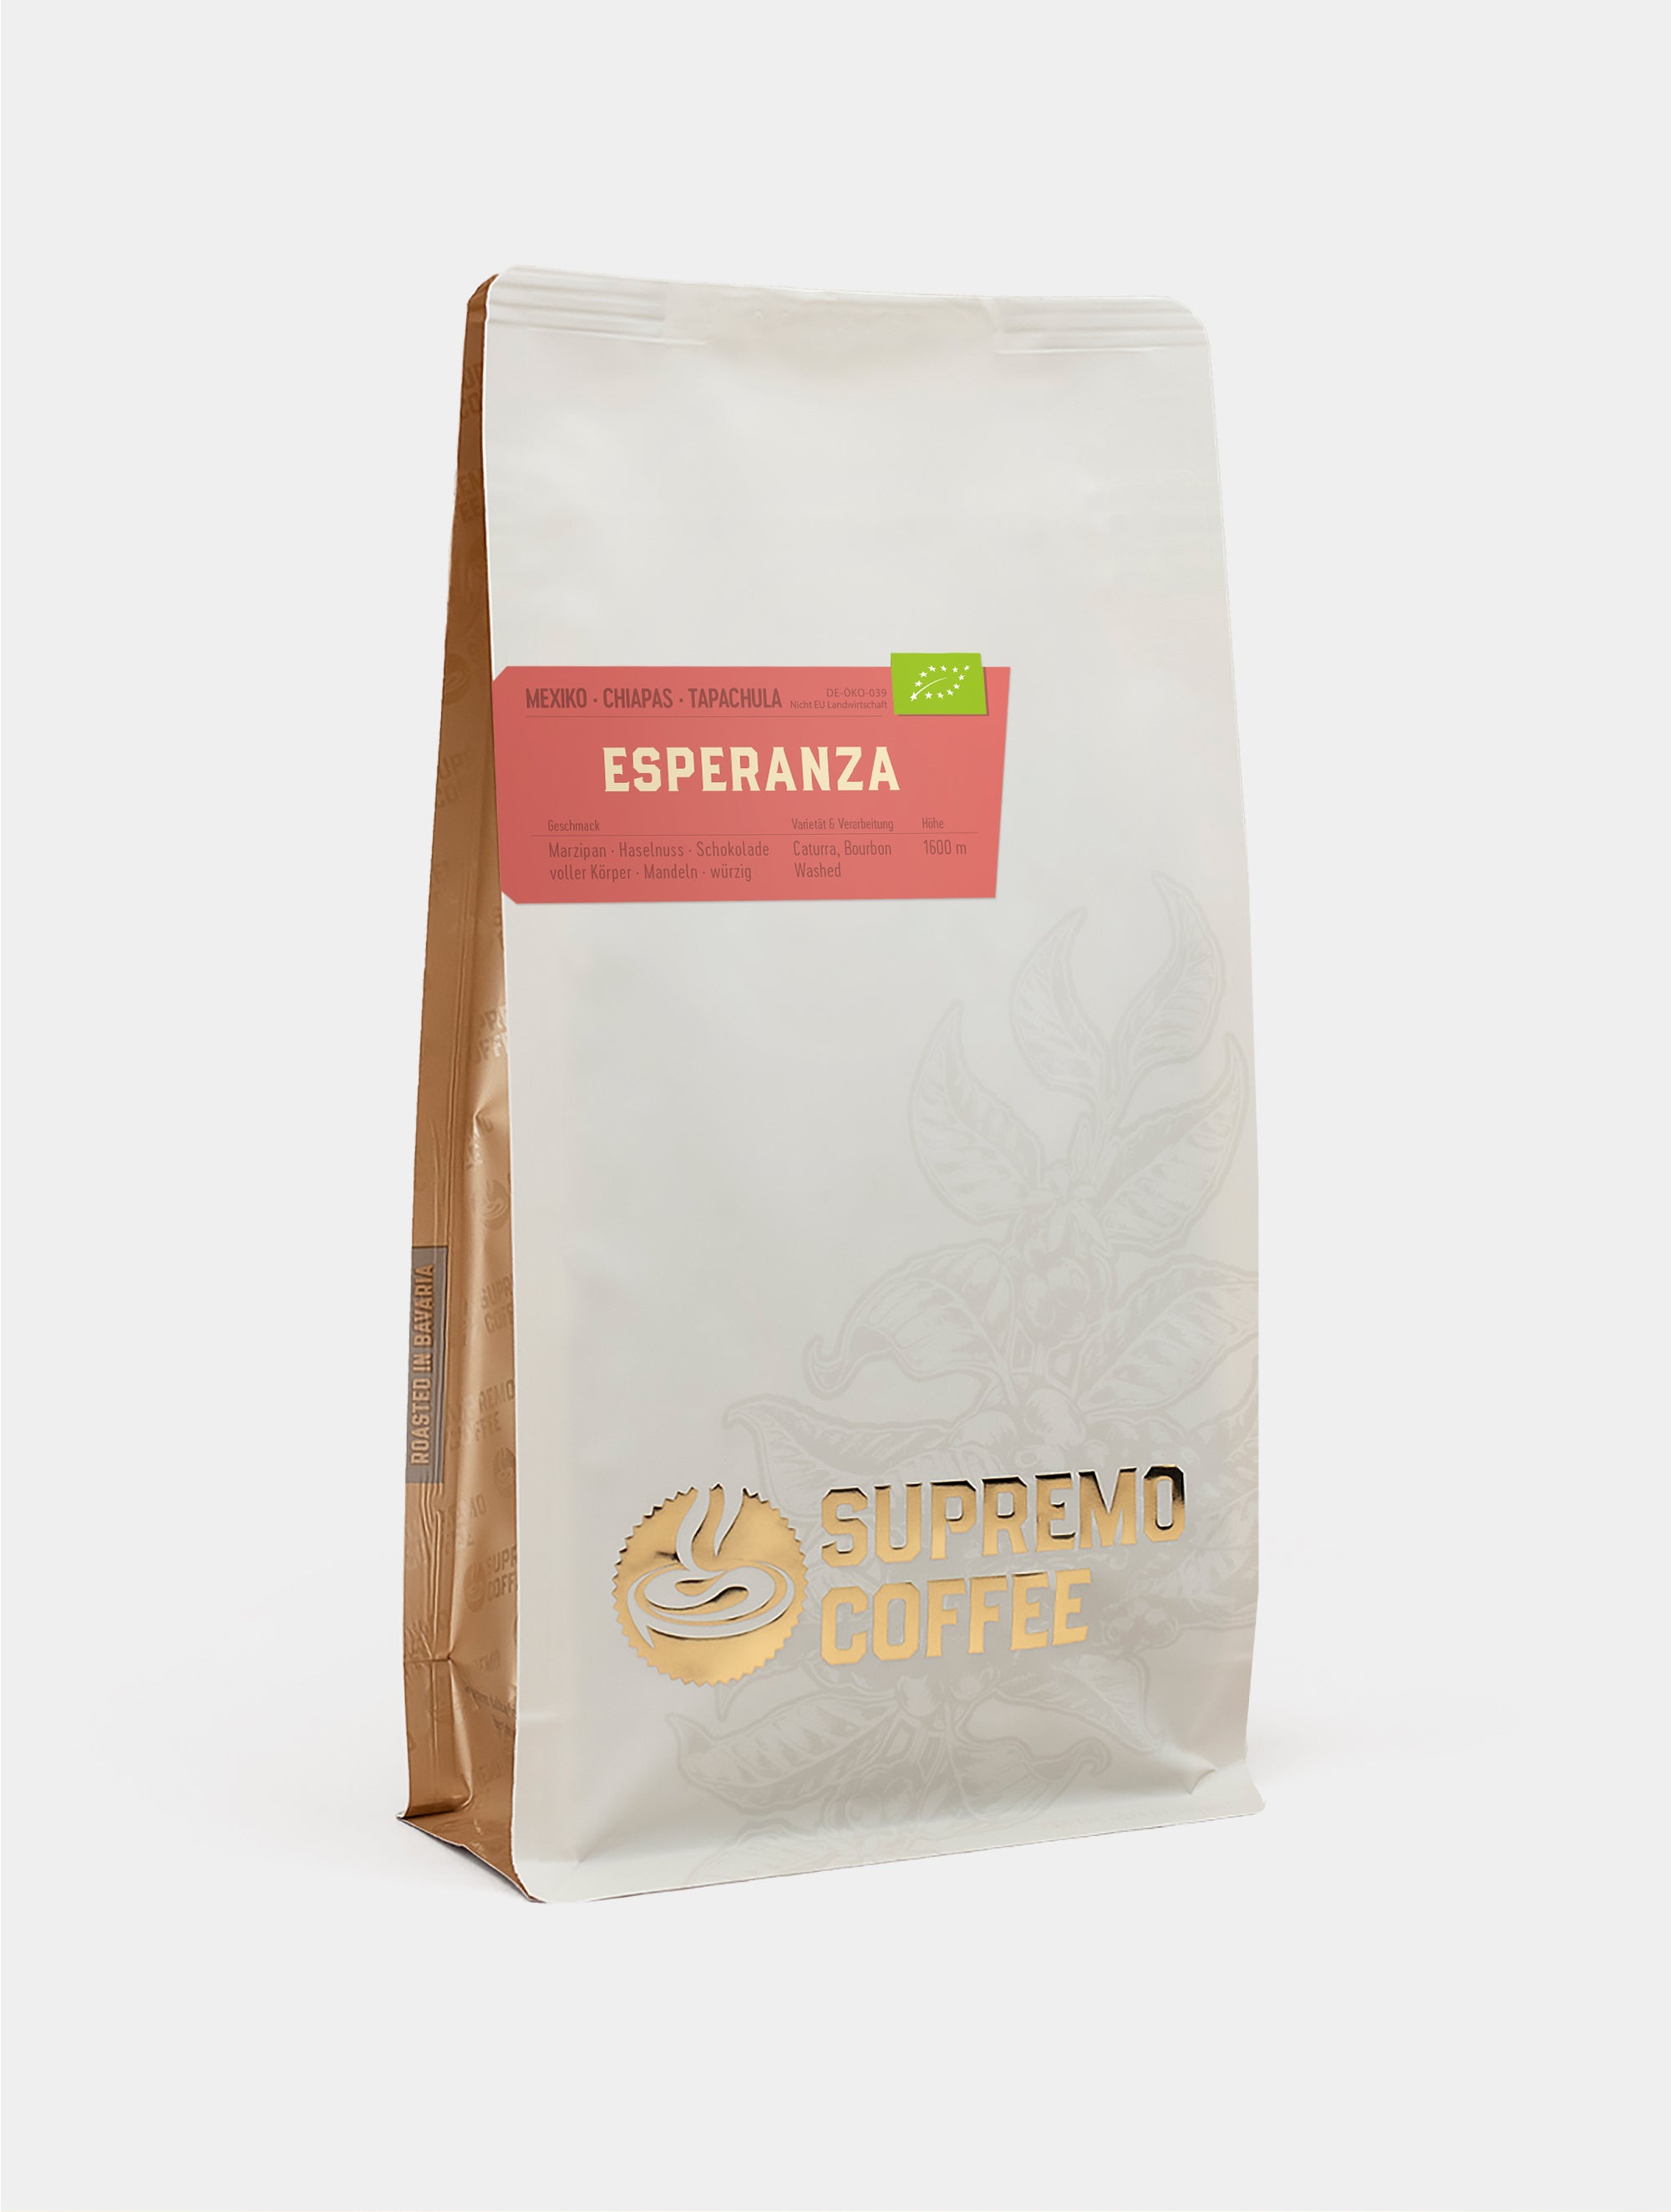 Esperanza, Mexiko | SUPREMO Coffee